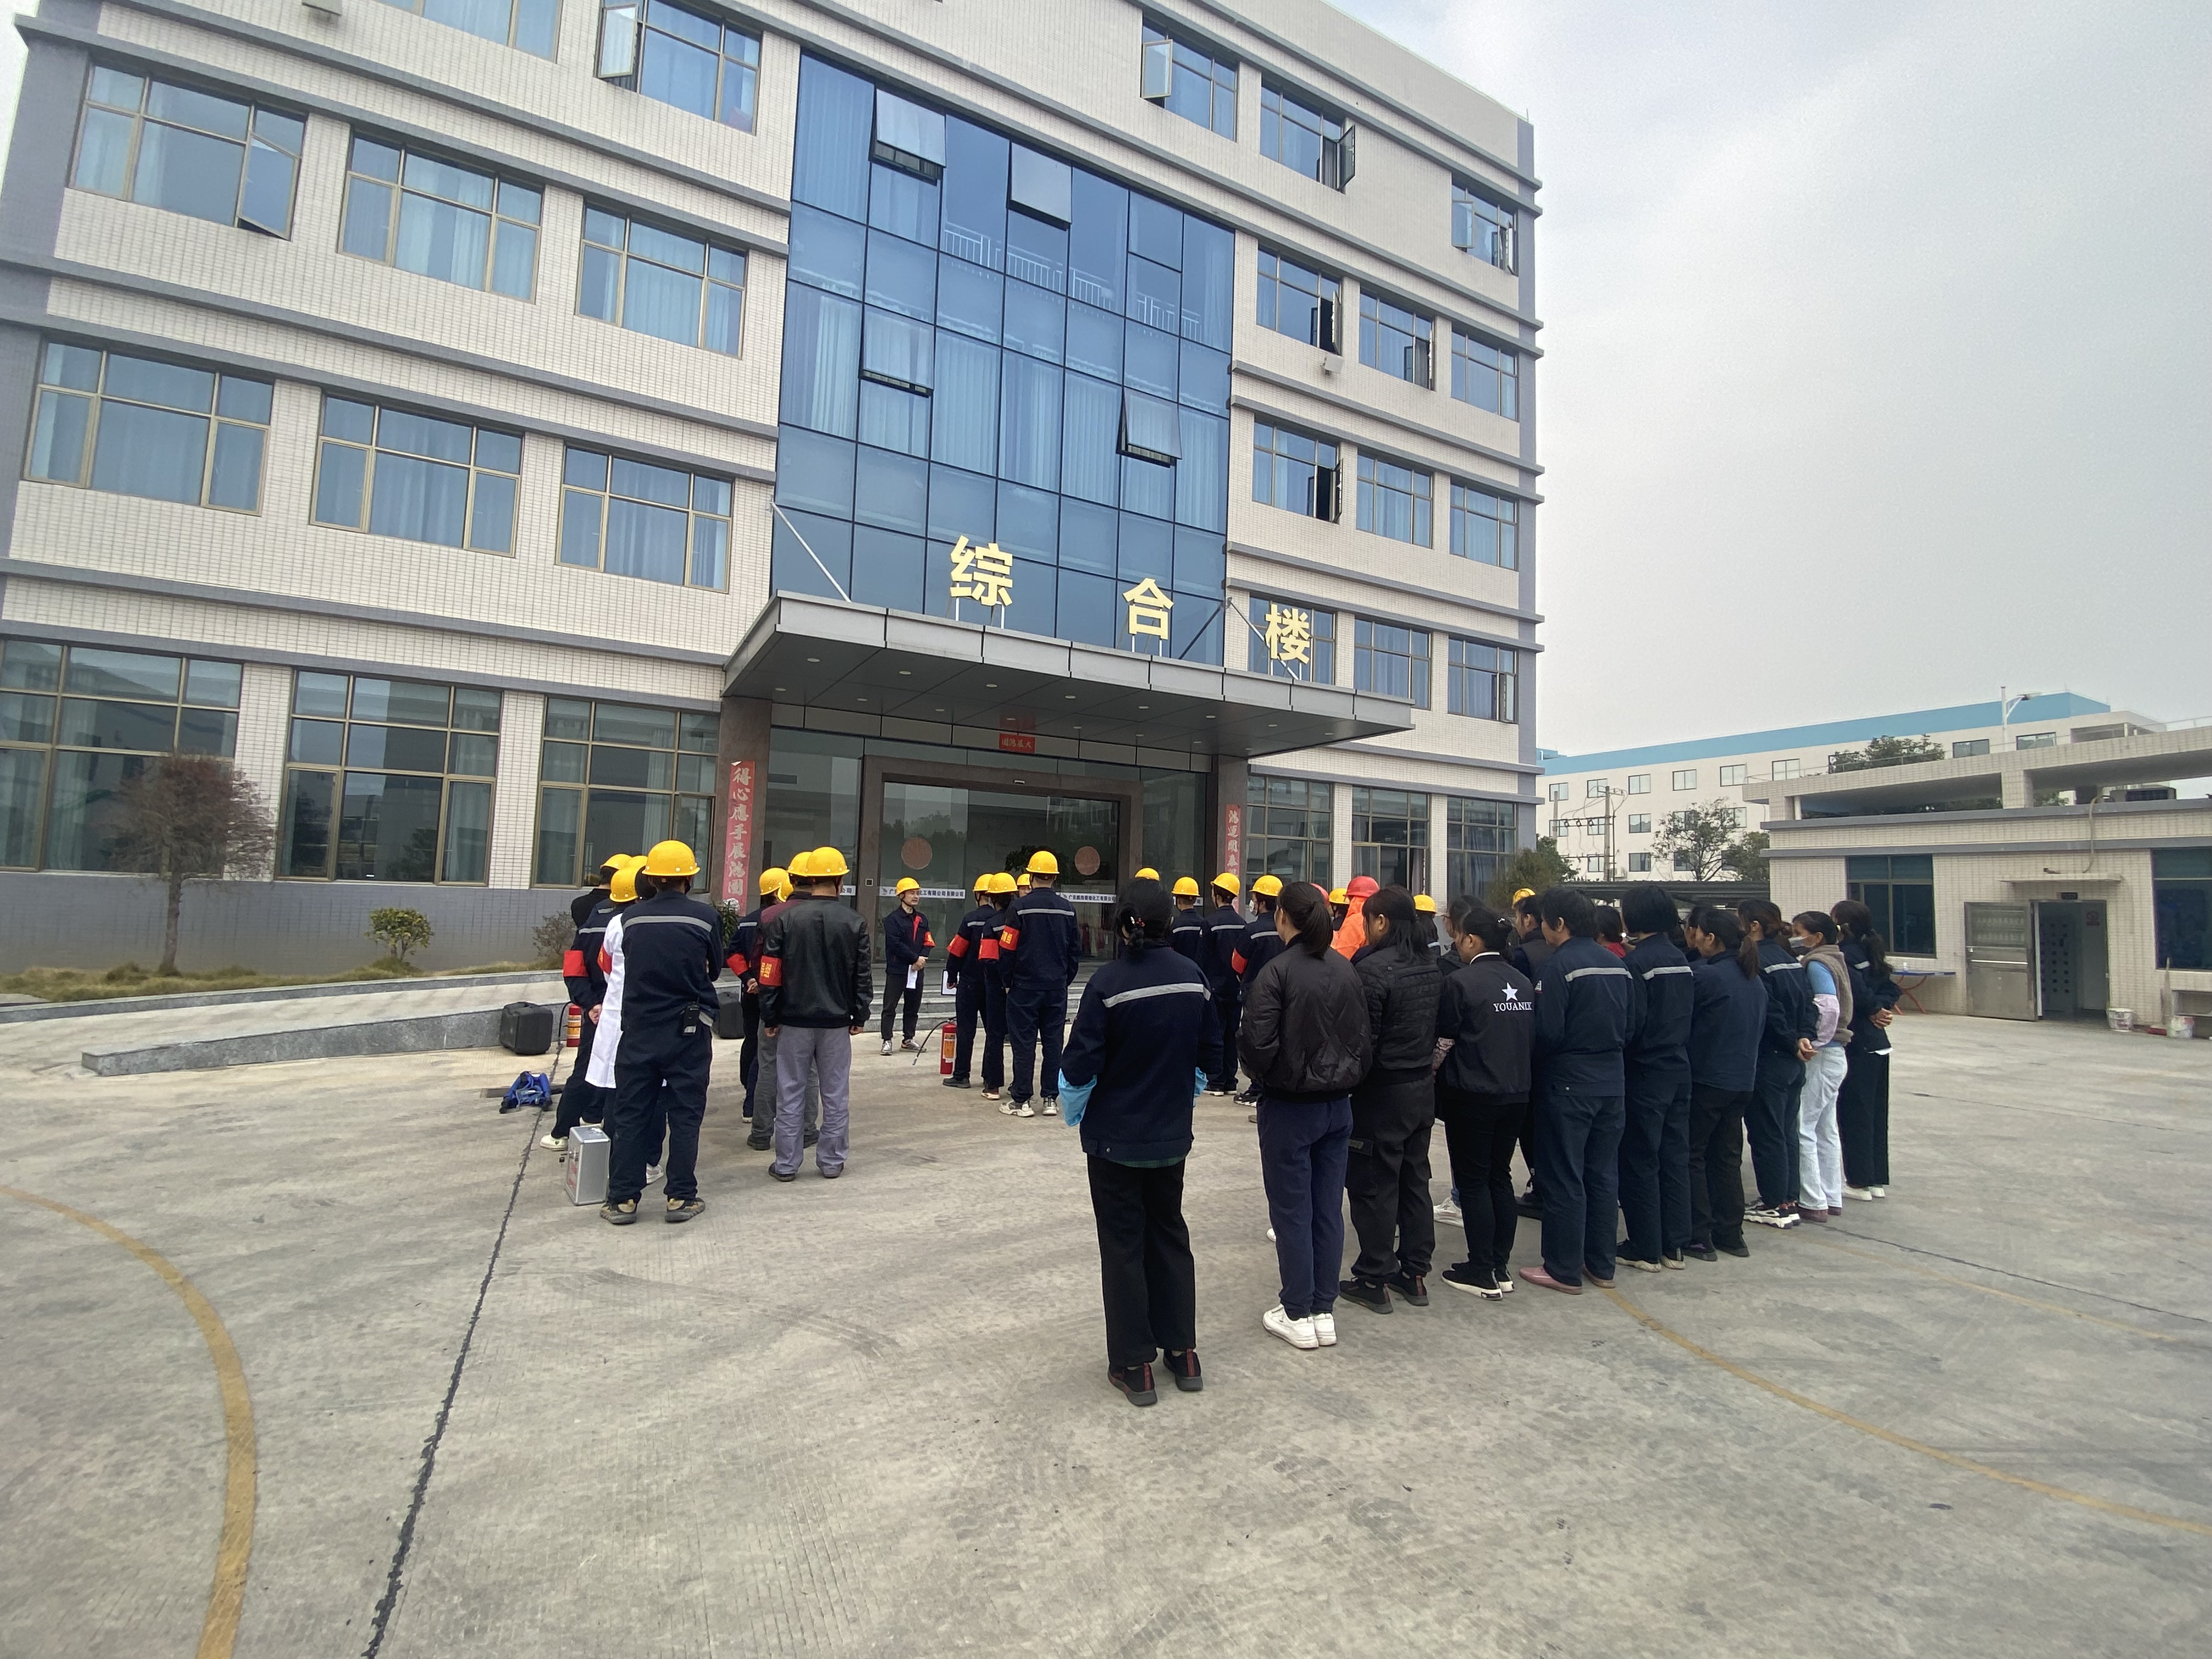 Formální požární cvičení Pengwei丨 se konalo 12. prosince 2021